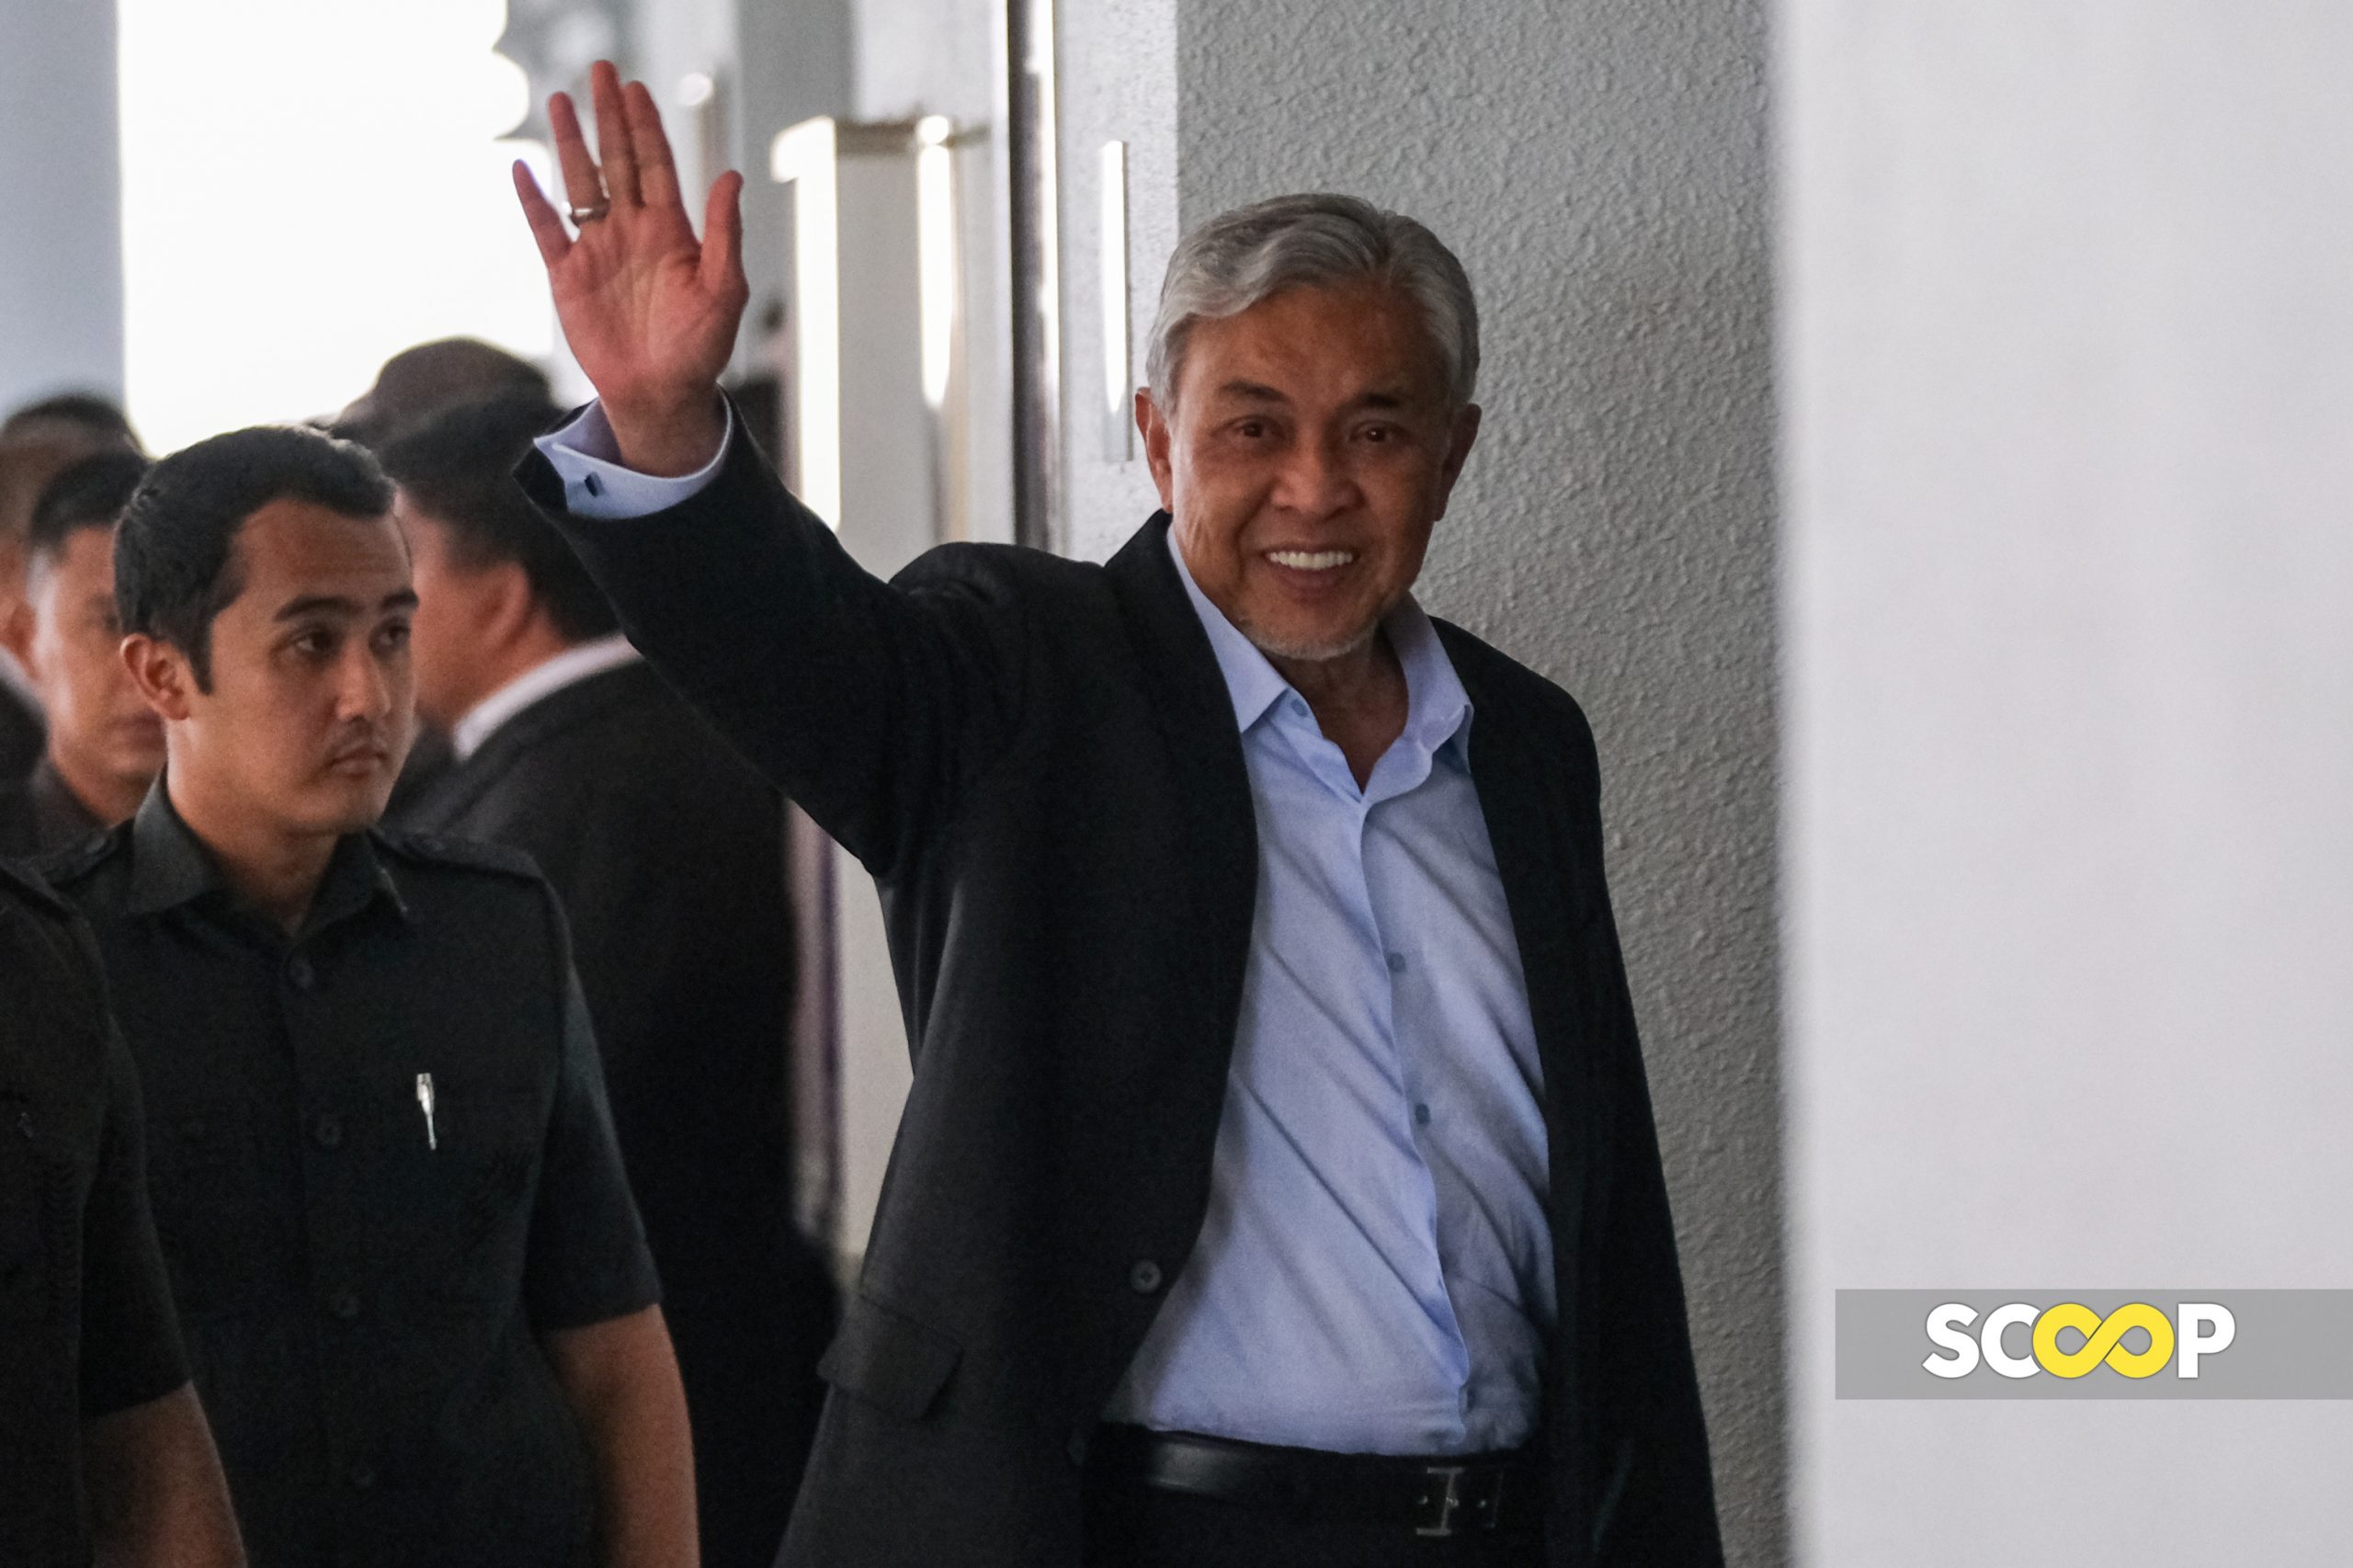 Free at last: Seven instances politicians escaped criminal charges, imprisonment